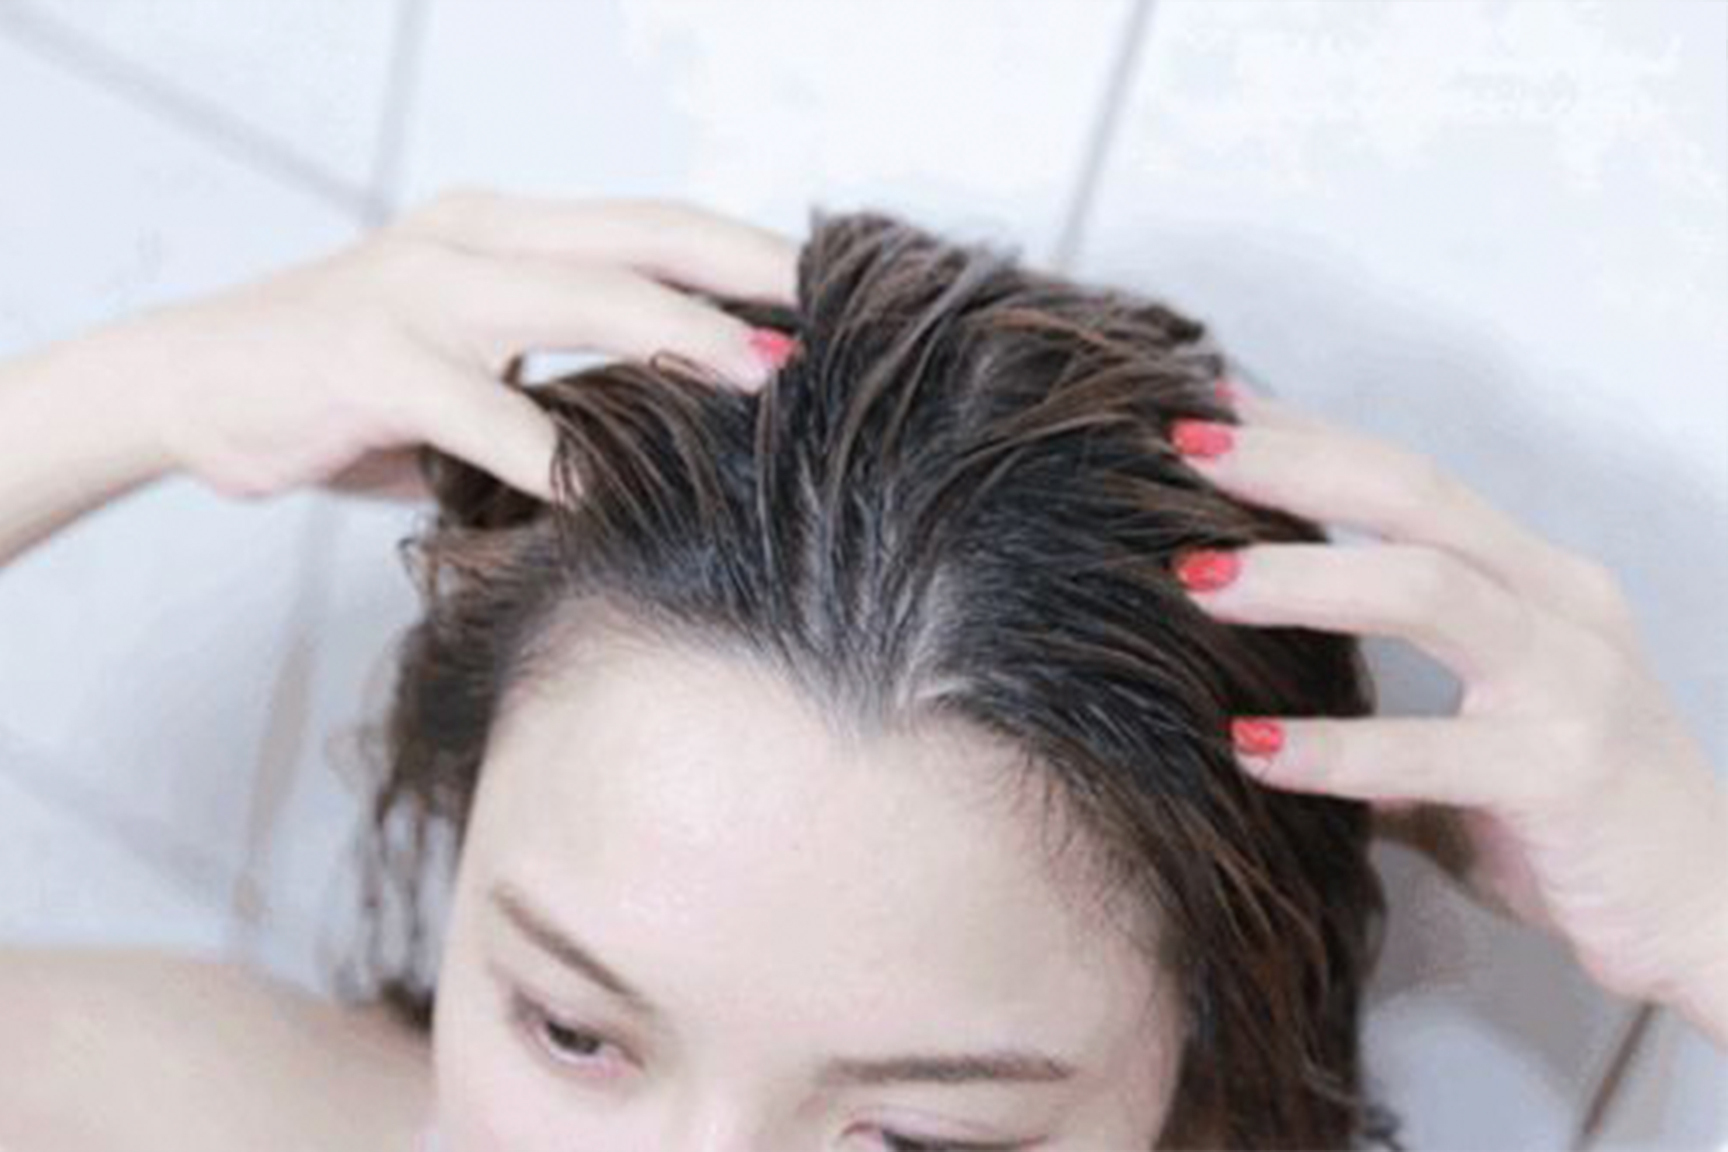 Ngày nào cũng gội đầu sạch sẽ mà vẫn mọc mụn da đầu: 4 nguyên nhân thường gặp hoặc 3 căn bệnh nguy hiểm có thể bạn đã mắc phải - Ảnh 1.